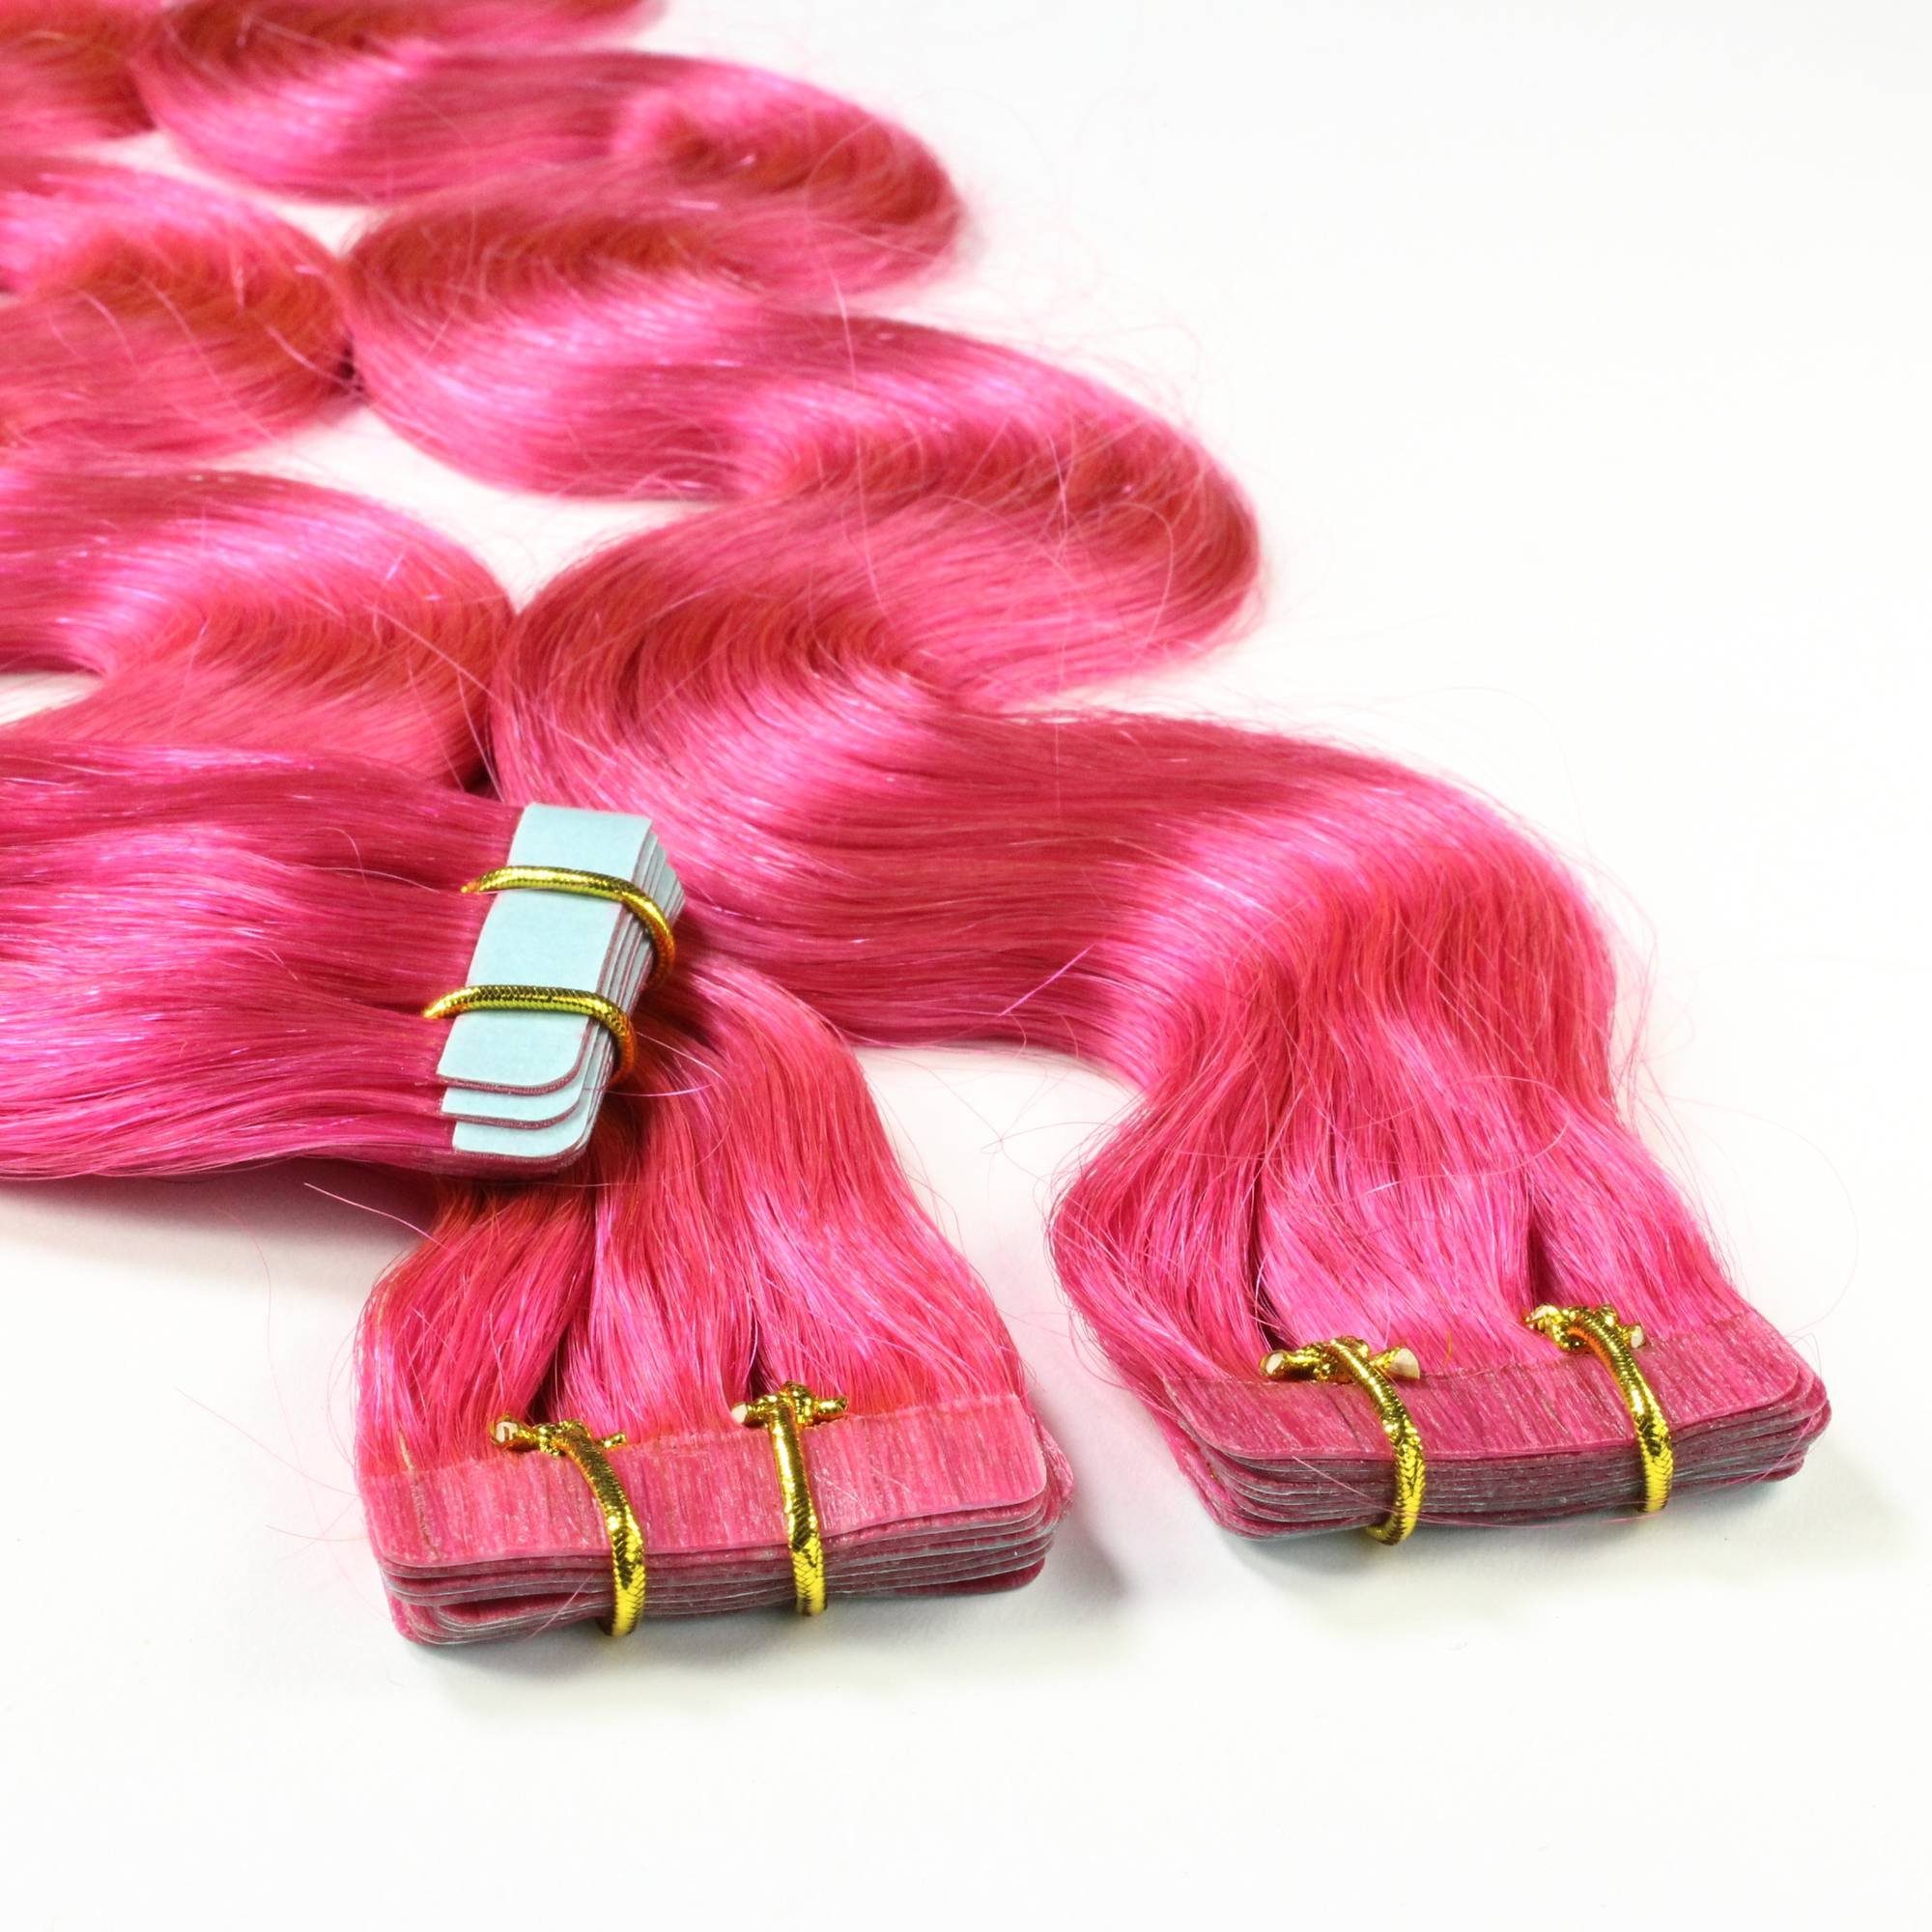 hair2heart Echthaar-Extension Tape Extensions gewellt #Pink 50cm